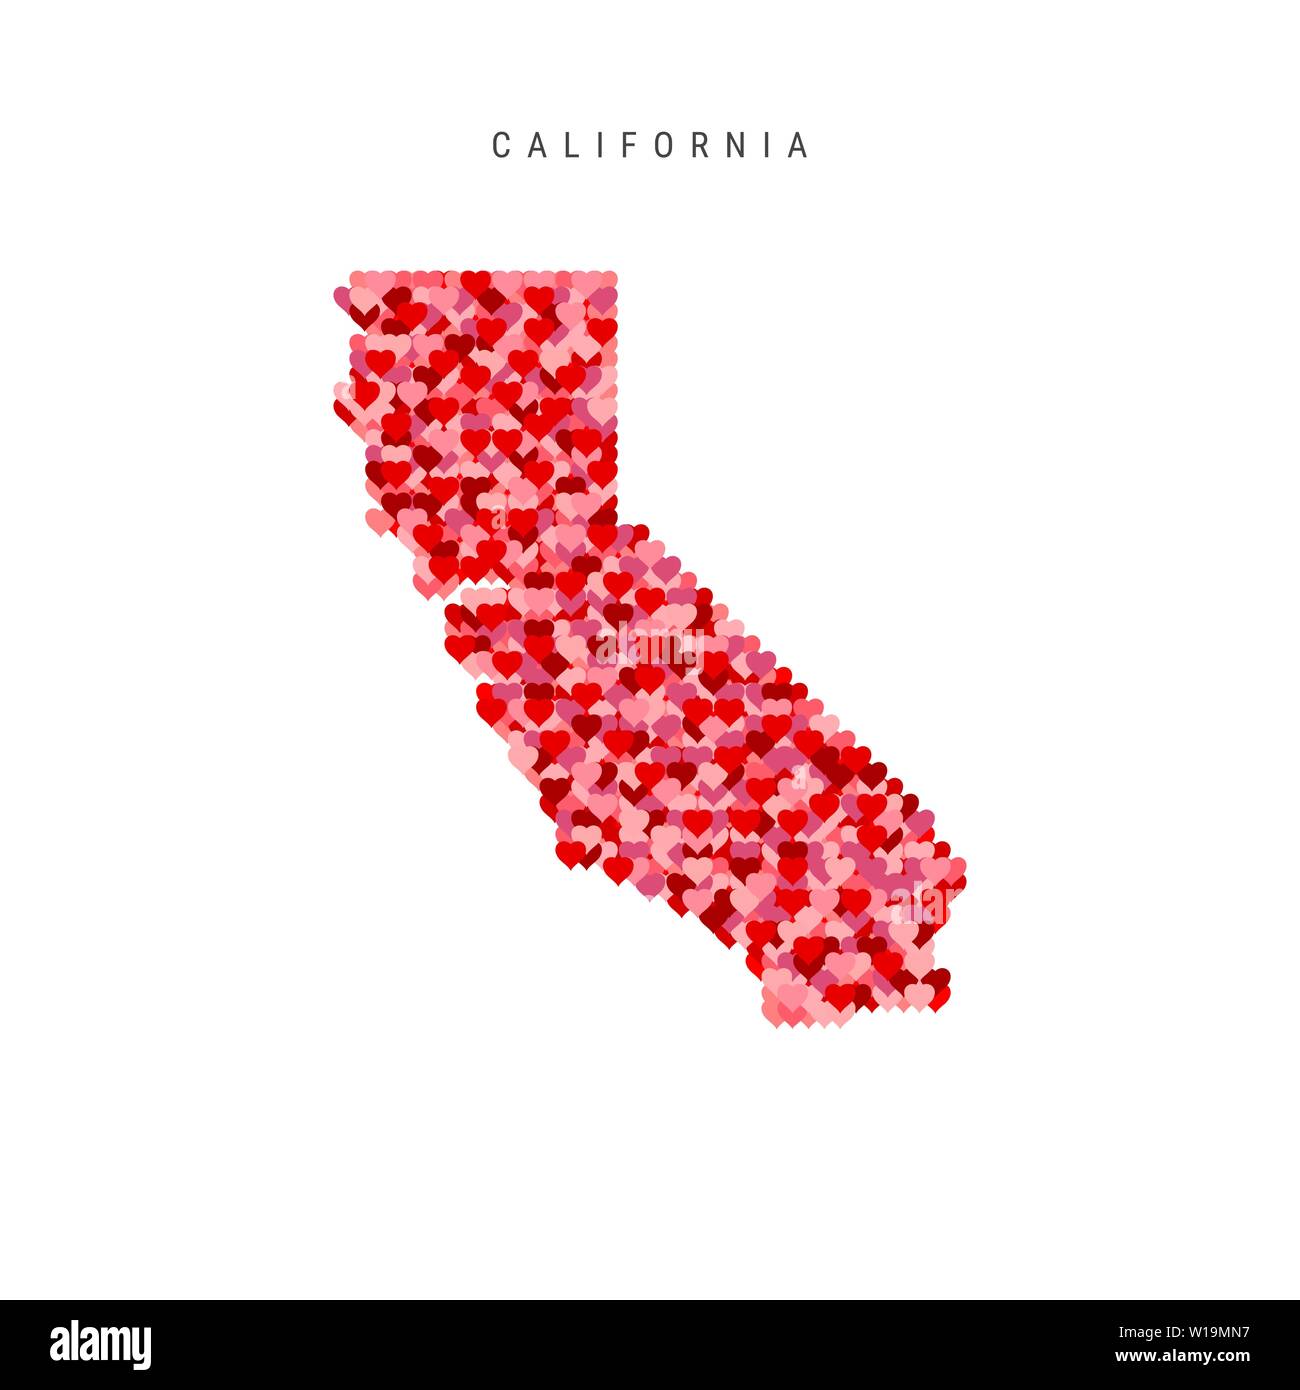 Ich liebe es, Kalifornien. Rot und rosa Herzen Muster vektorkarte von Kalifornien isoliert auf weißem Hintergrund. Stock Vektor